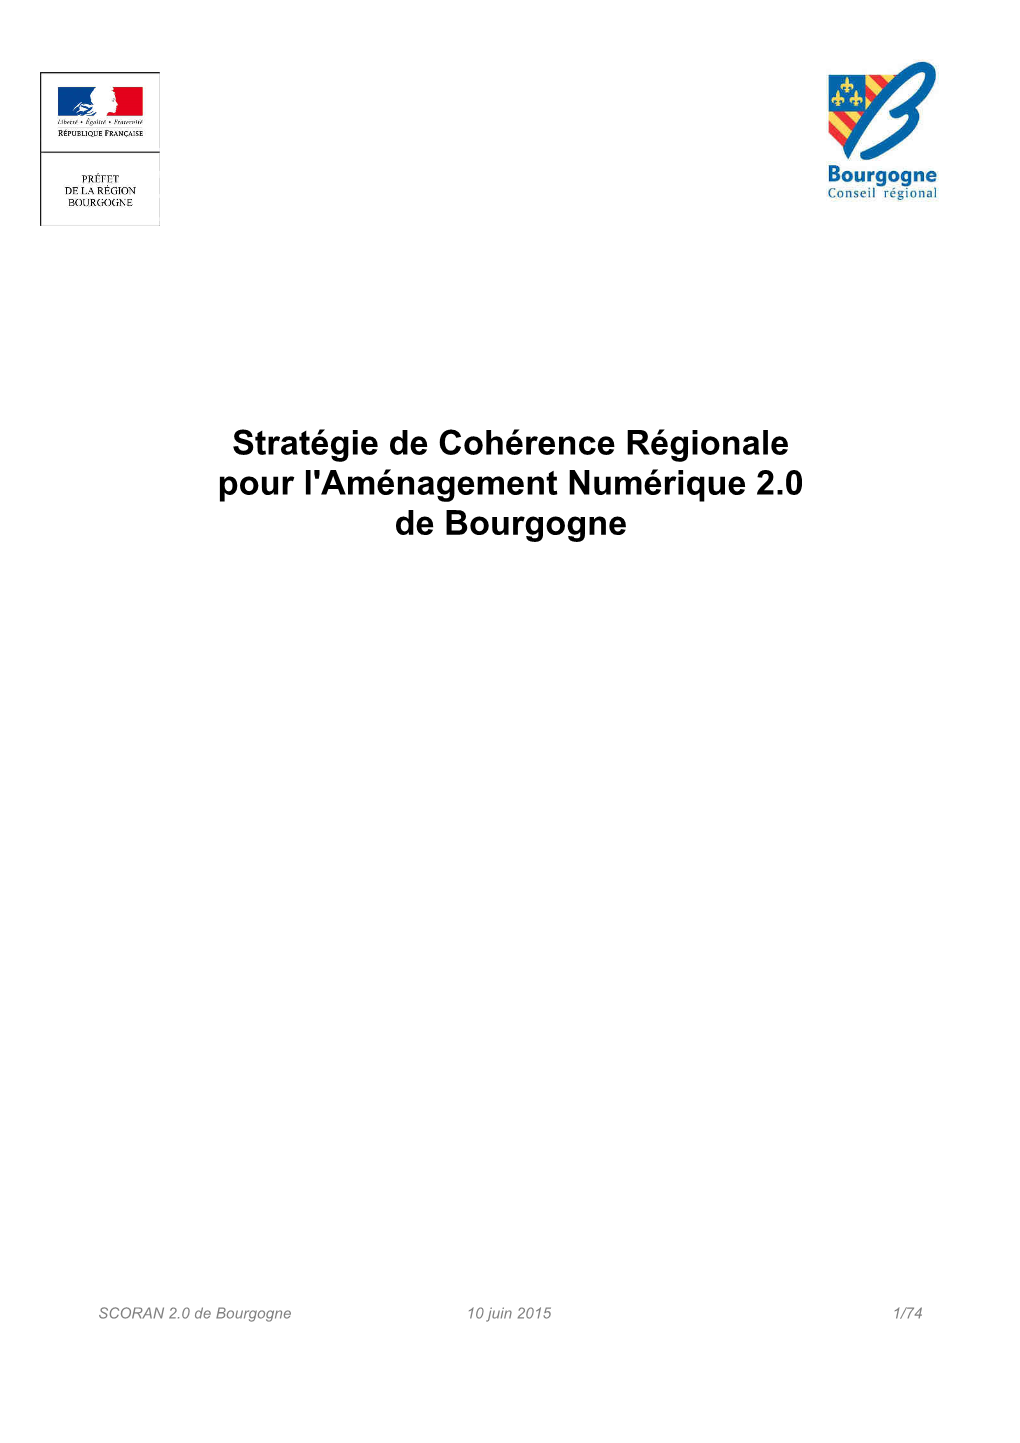 Stratégie De Cohérence Régionale Pour L'aménagement Numérique 2.0 De Bourgogne